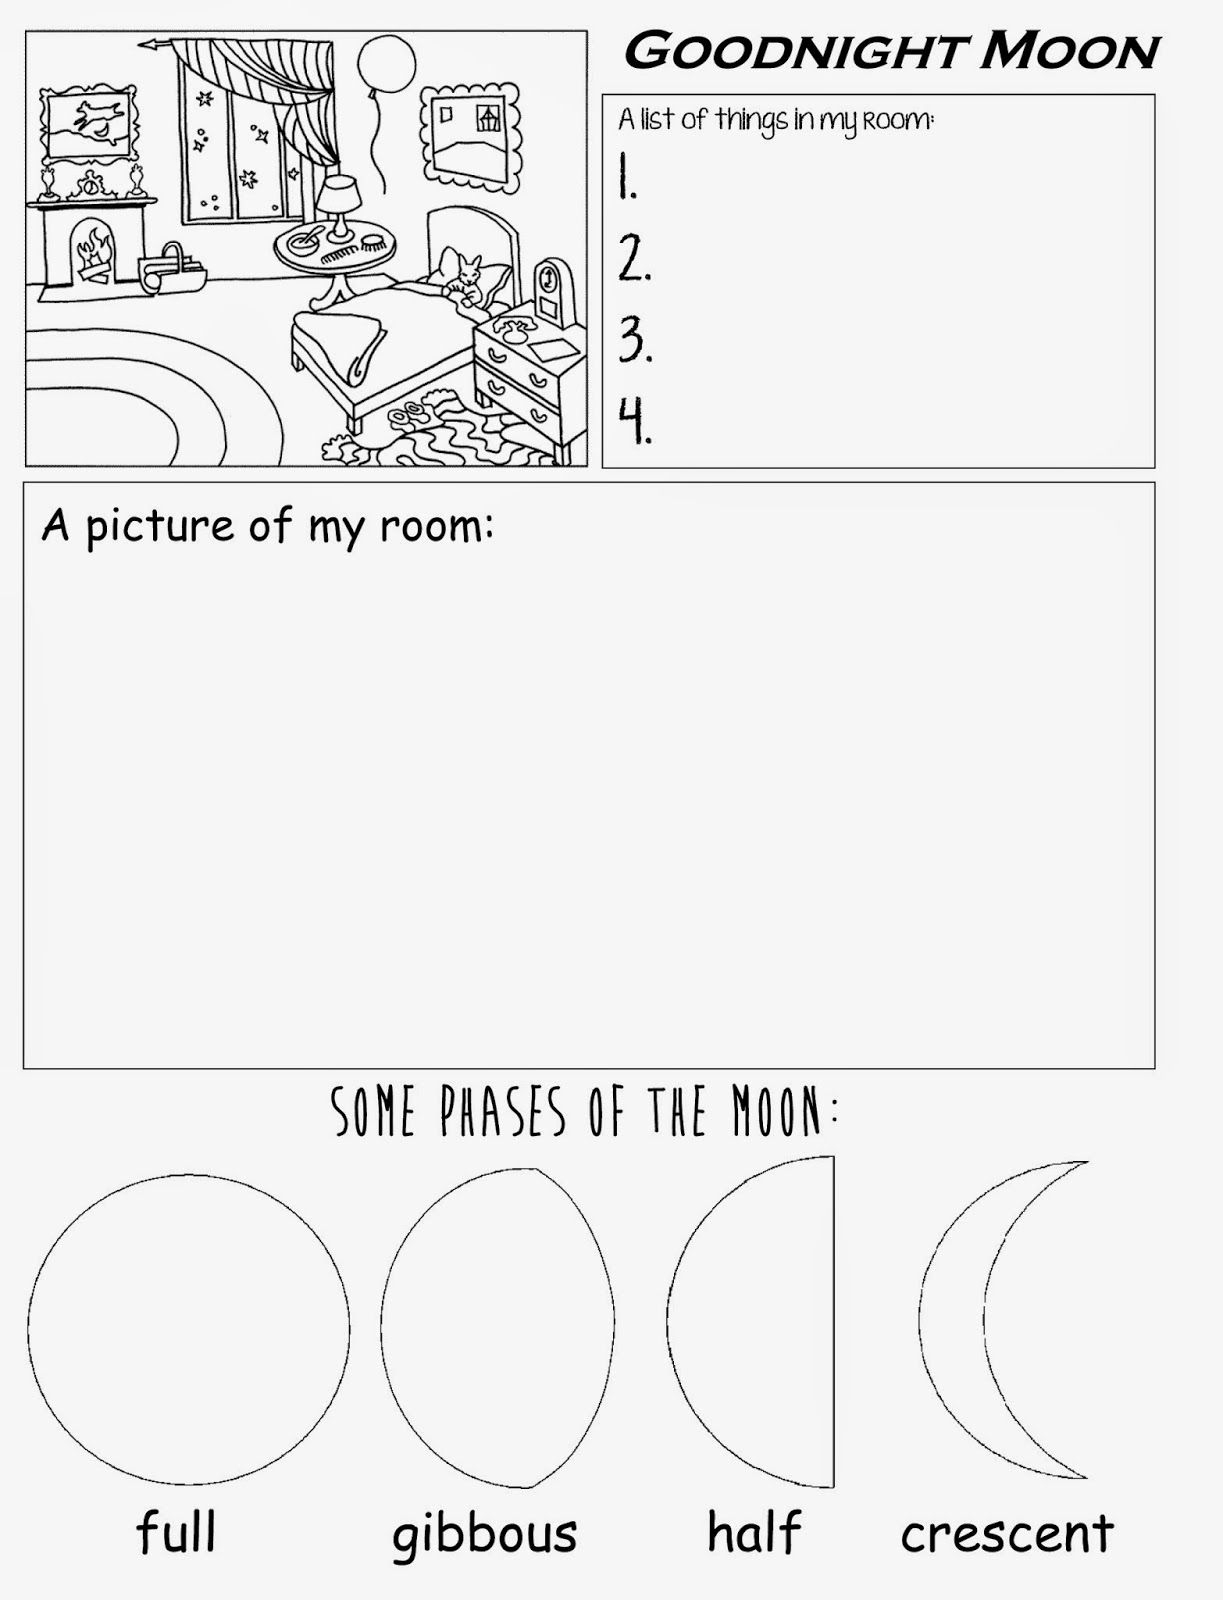 Goodnight Moon Free Printable Worksheet For Preschool Kindergarten | Home Worksheets Printables